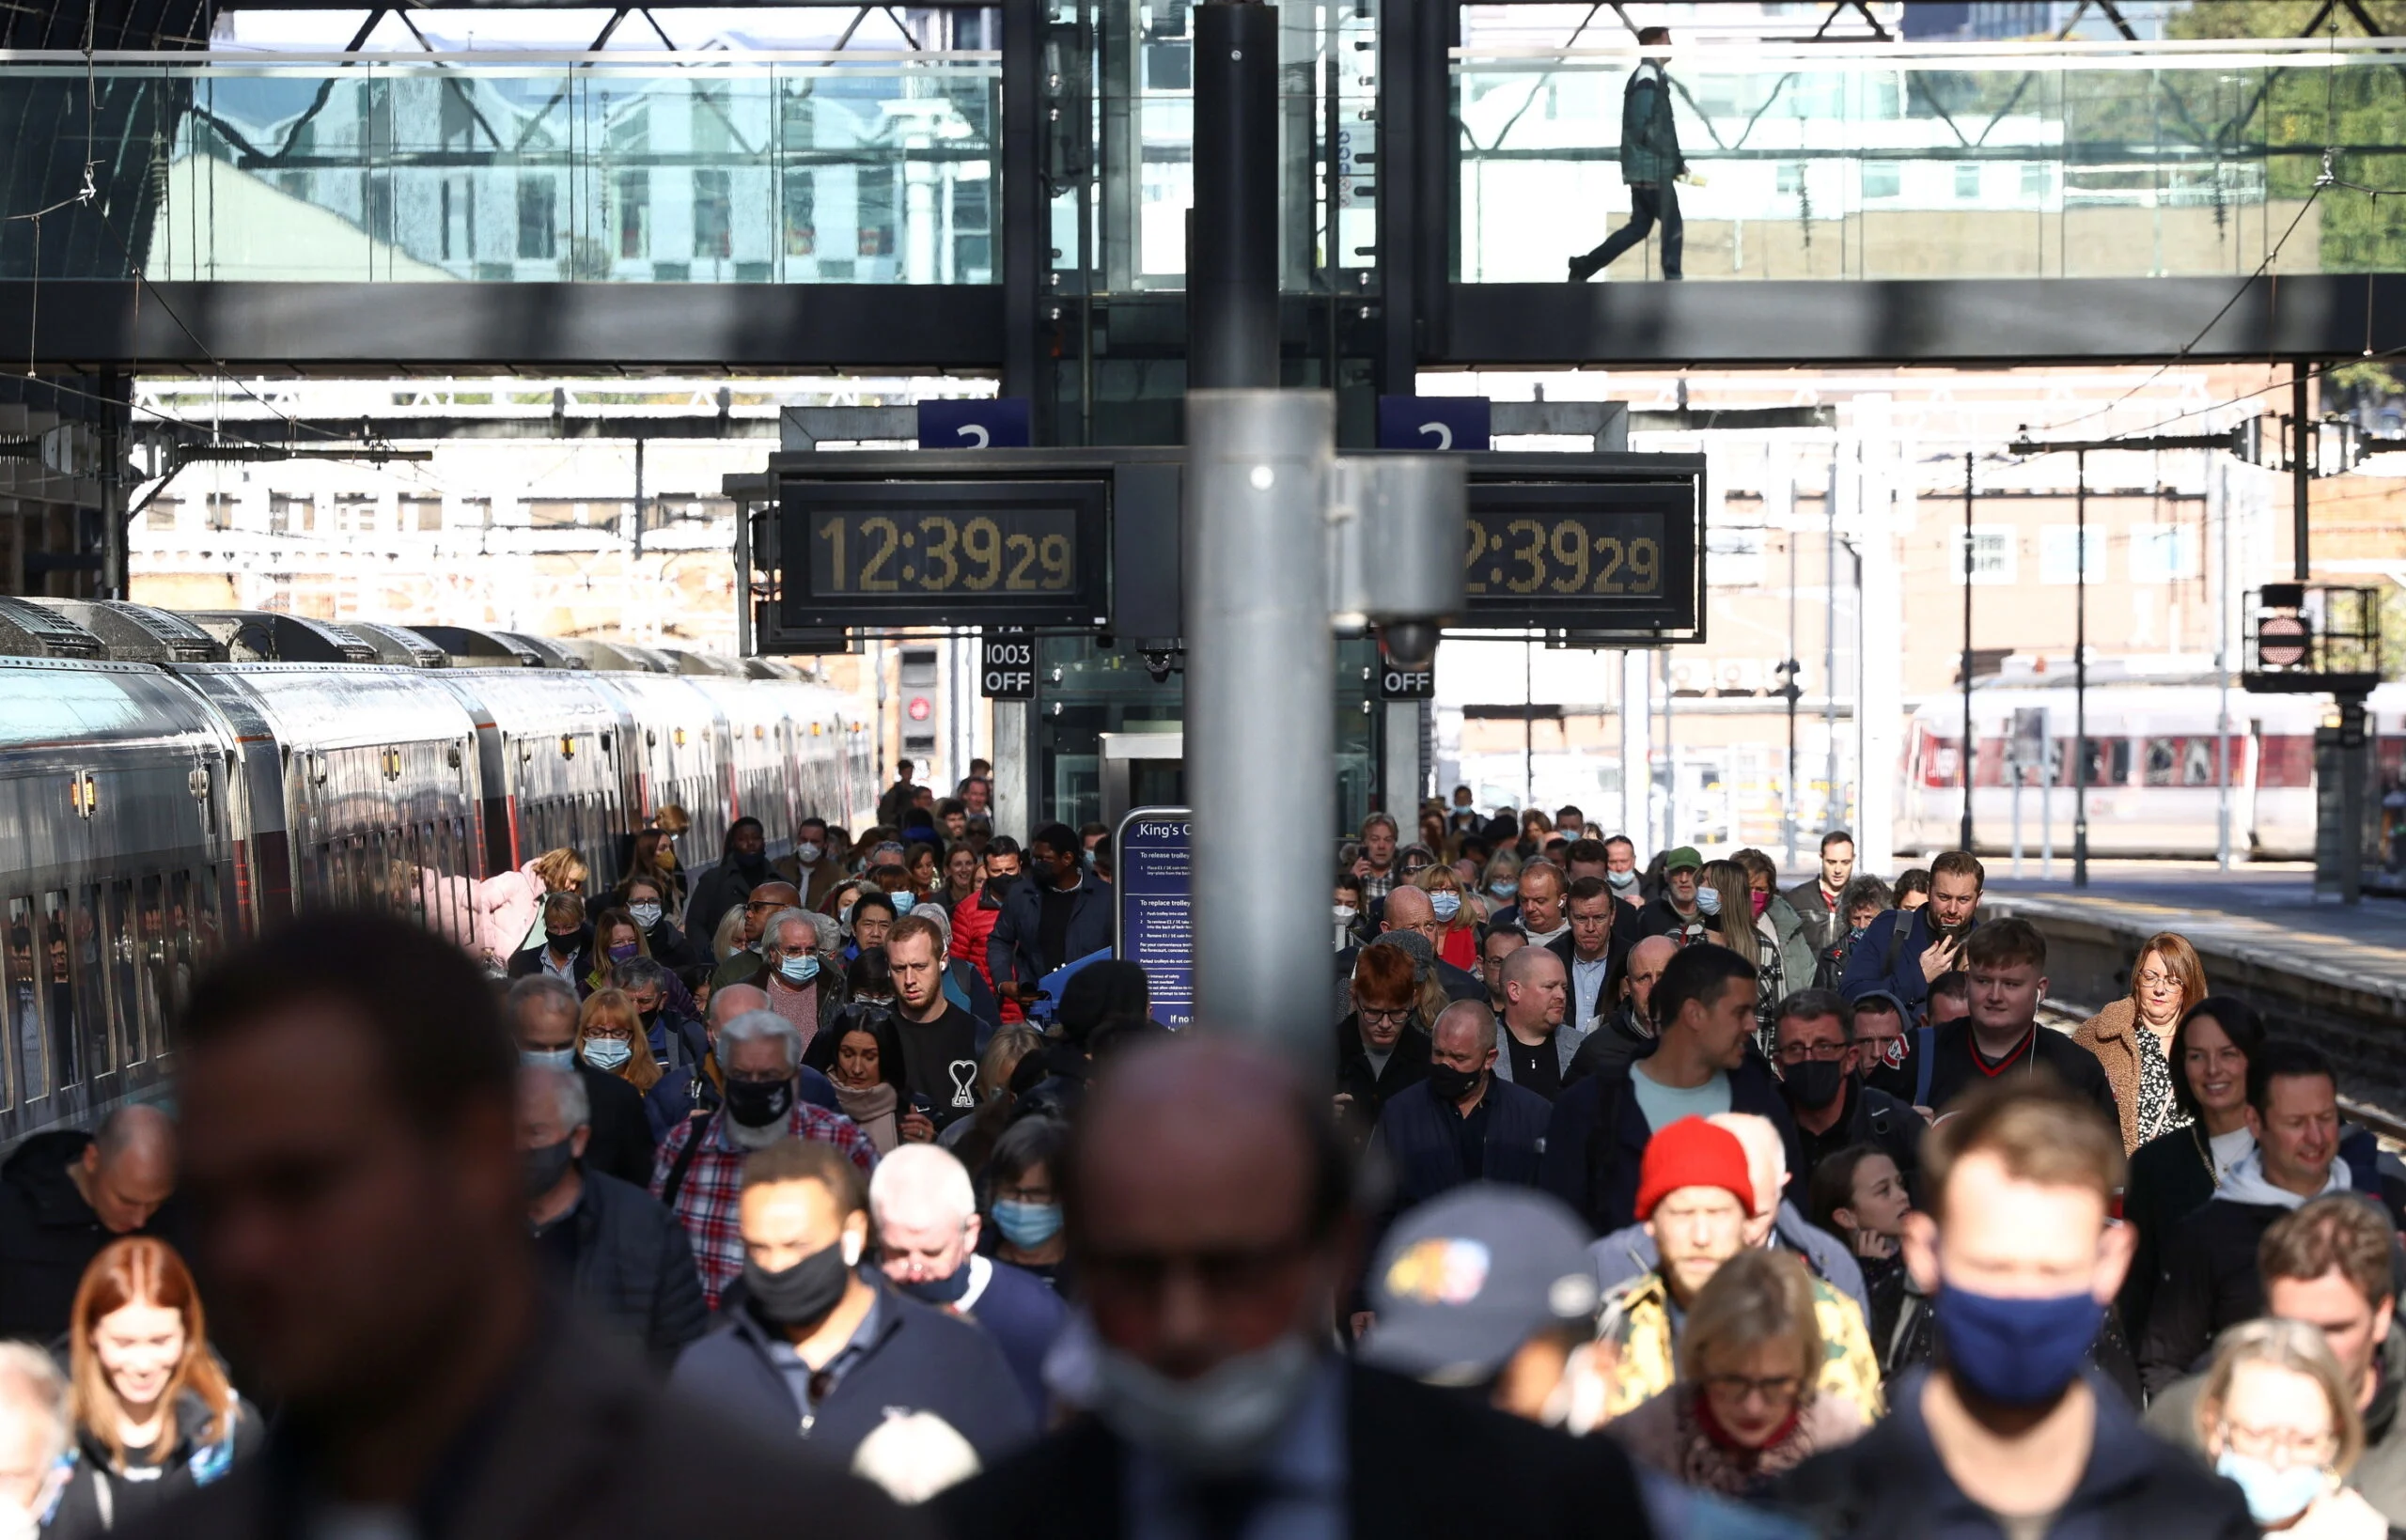 אנשים בתחנת רכבת בלונדון בזמן התפרצות נגיף הקורונה